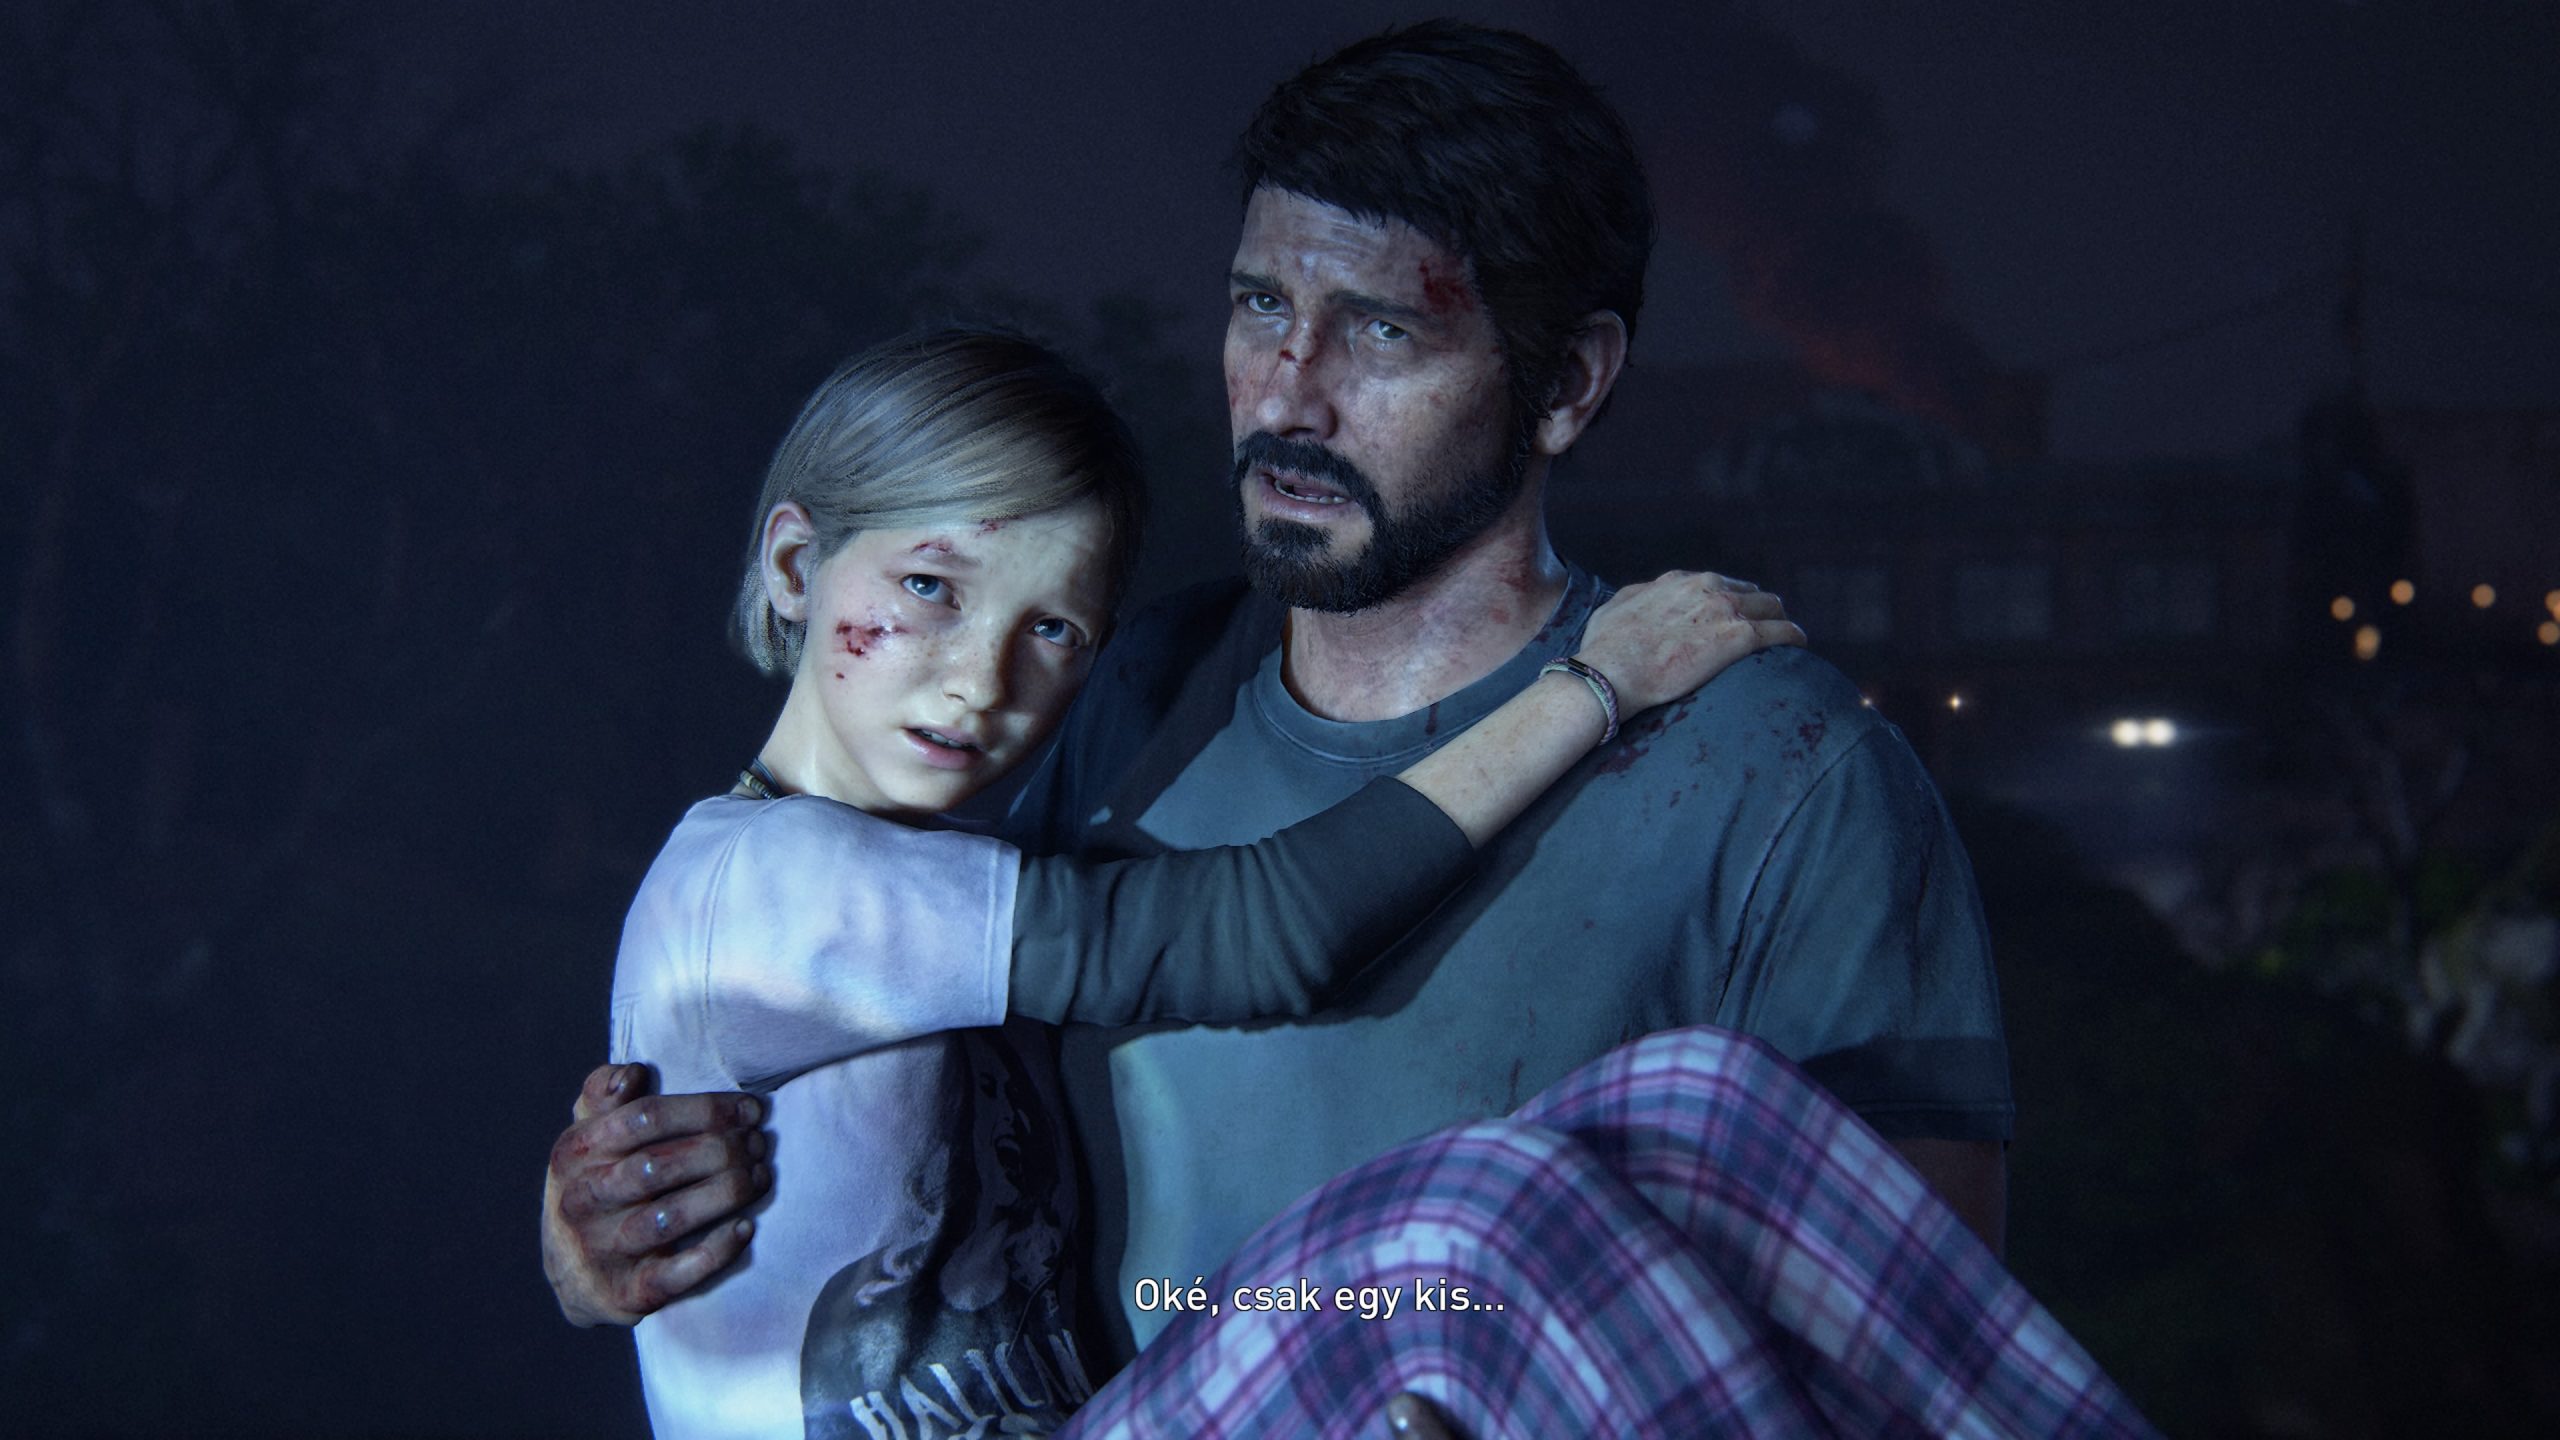 Joel menekül a lányával a Last of us elején